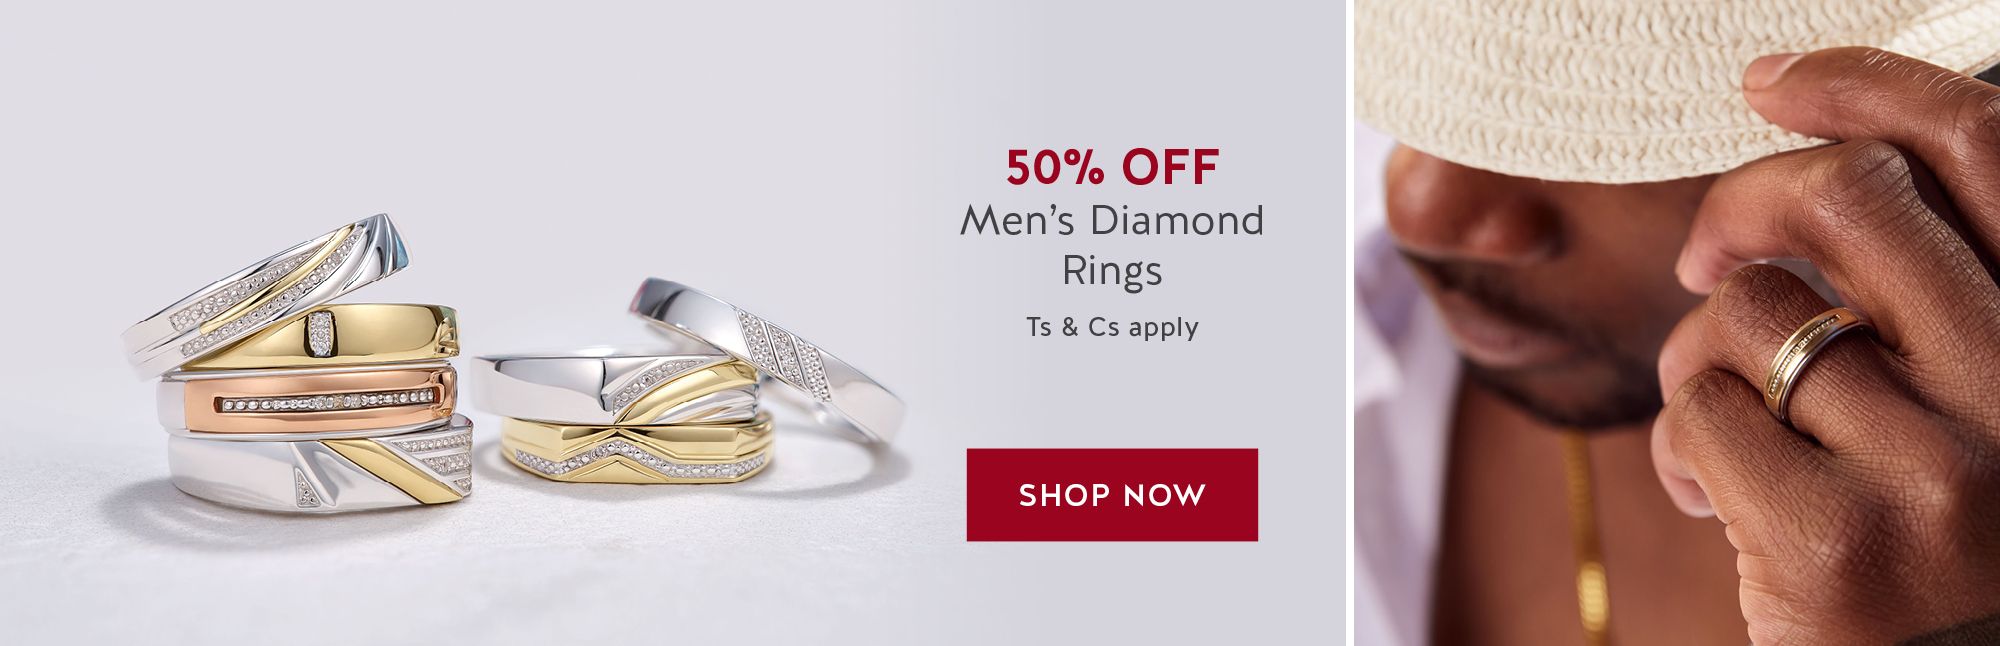 50% OFF Men’s Diamond Rings